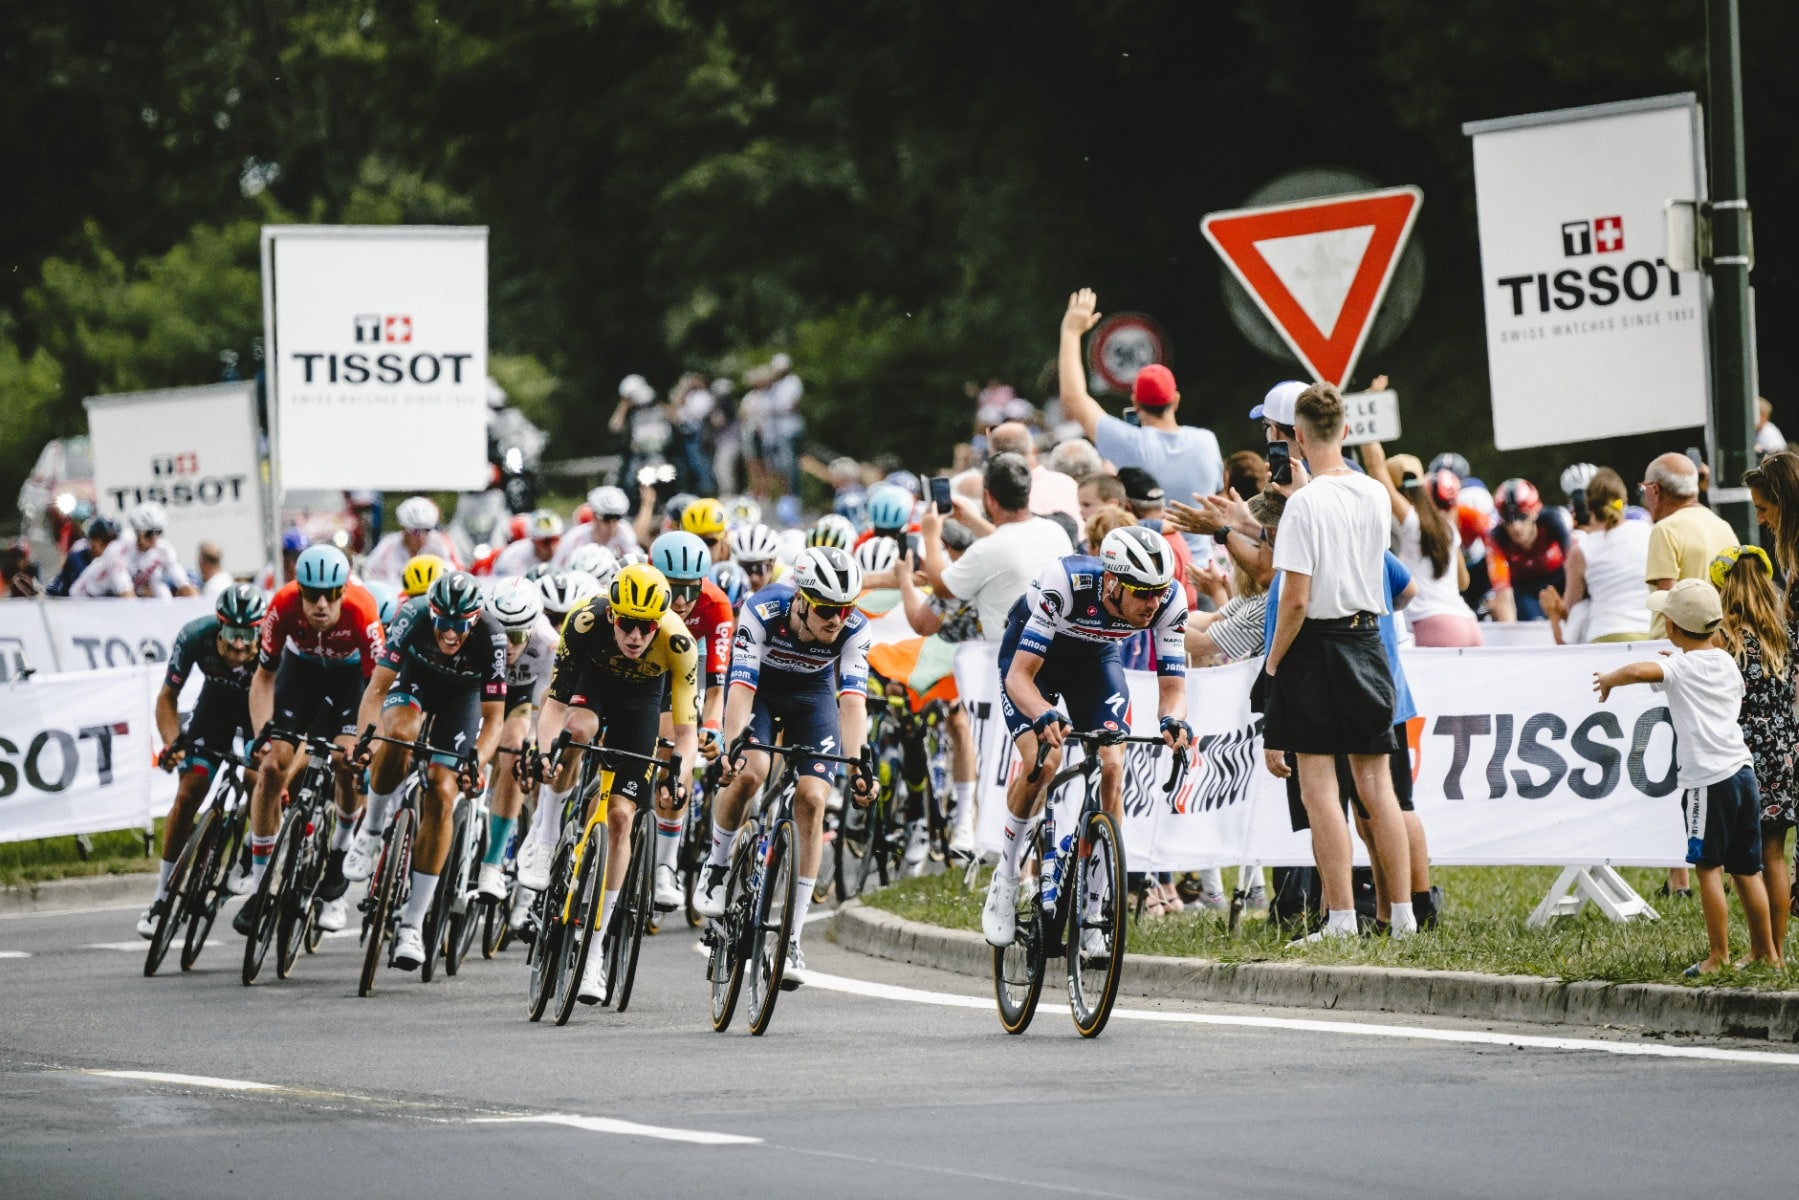 Tissot und die Tour de France: Wir feiern das Erbe von Zeitmessung und Innovation